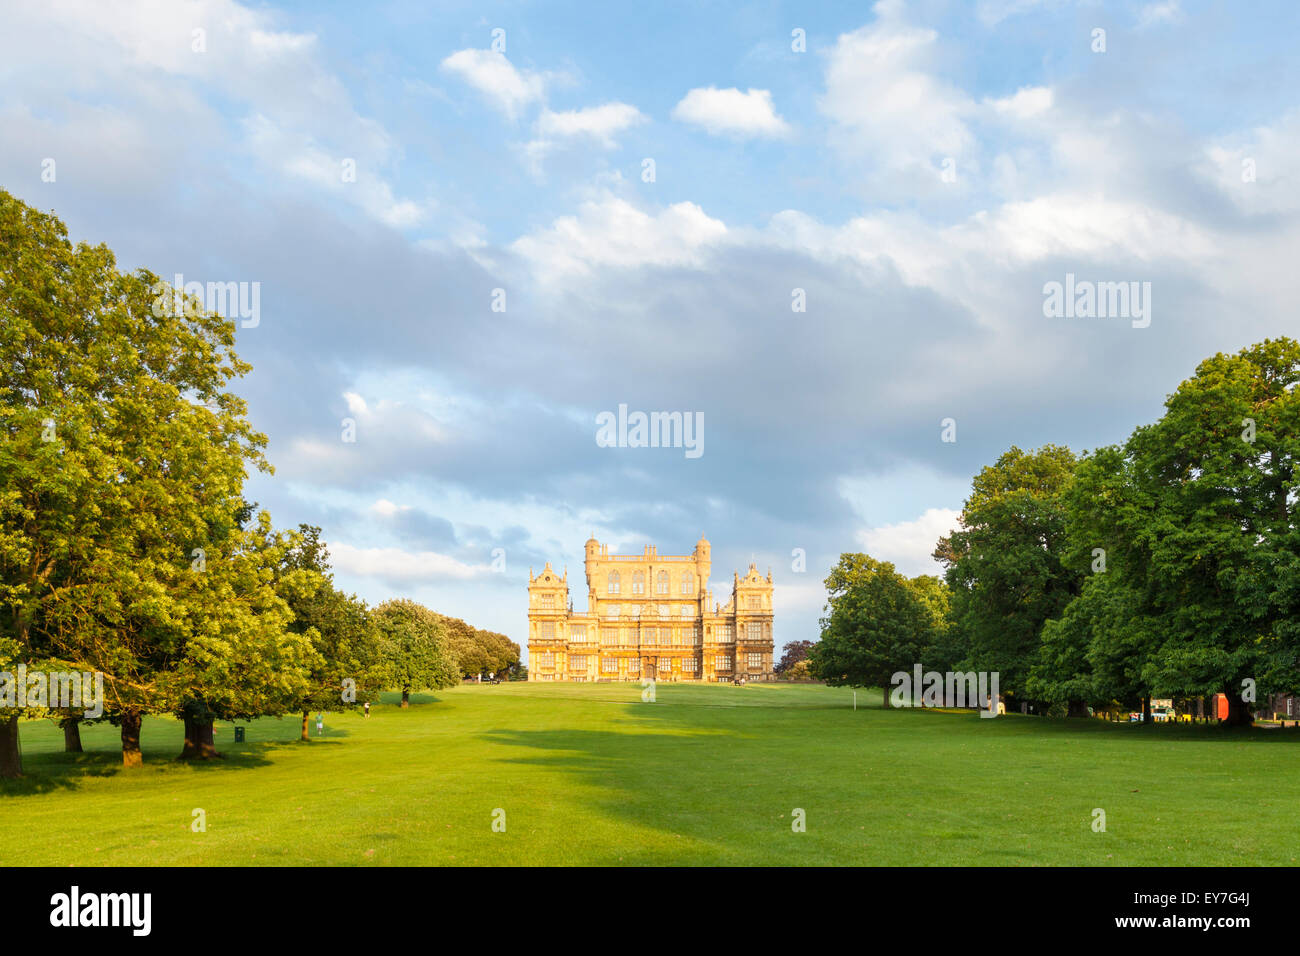 Parc de Wollaton Hall Wollaton avec, debout sur une colline au loin. Wollaton Park, Nottingham, England, UK Banque D'Images